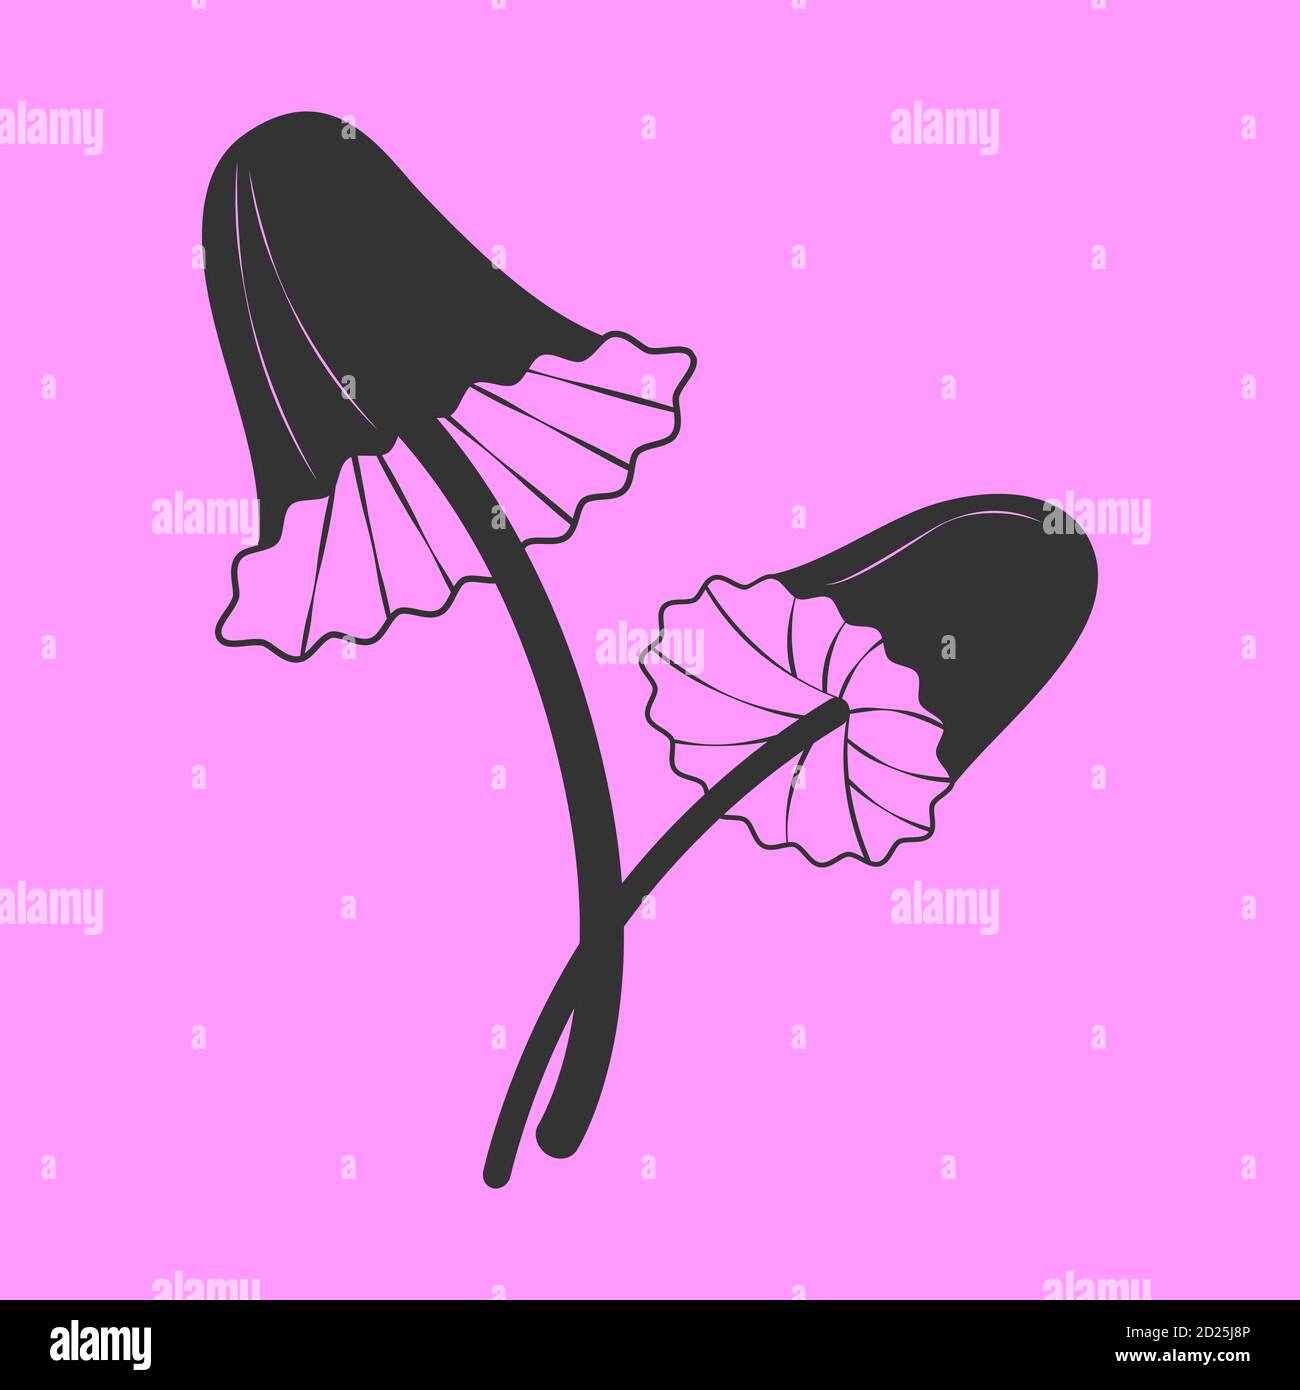 Icône en forme de champignon psilocybin, silhouette noire dans un style de dessin animé plat, illustration dessinée à la main. Vecteur eps 10. Fond violet Illustration de Vecteur